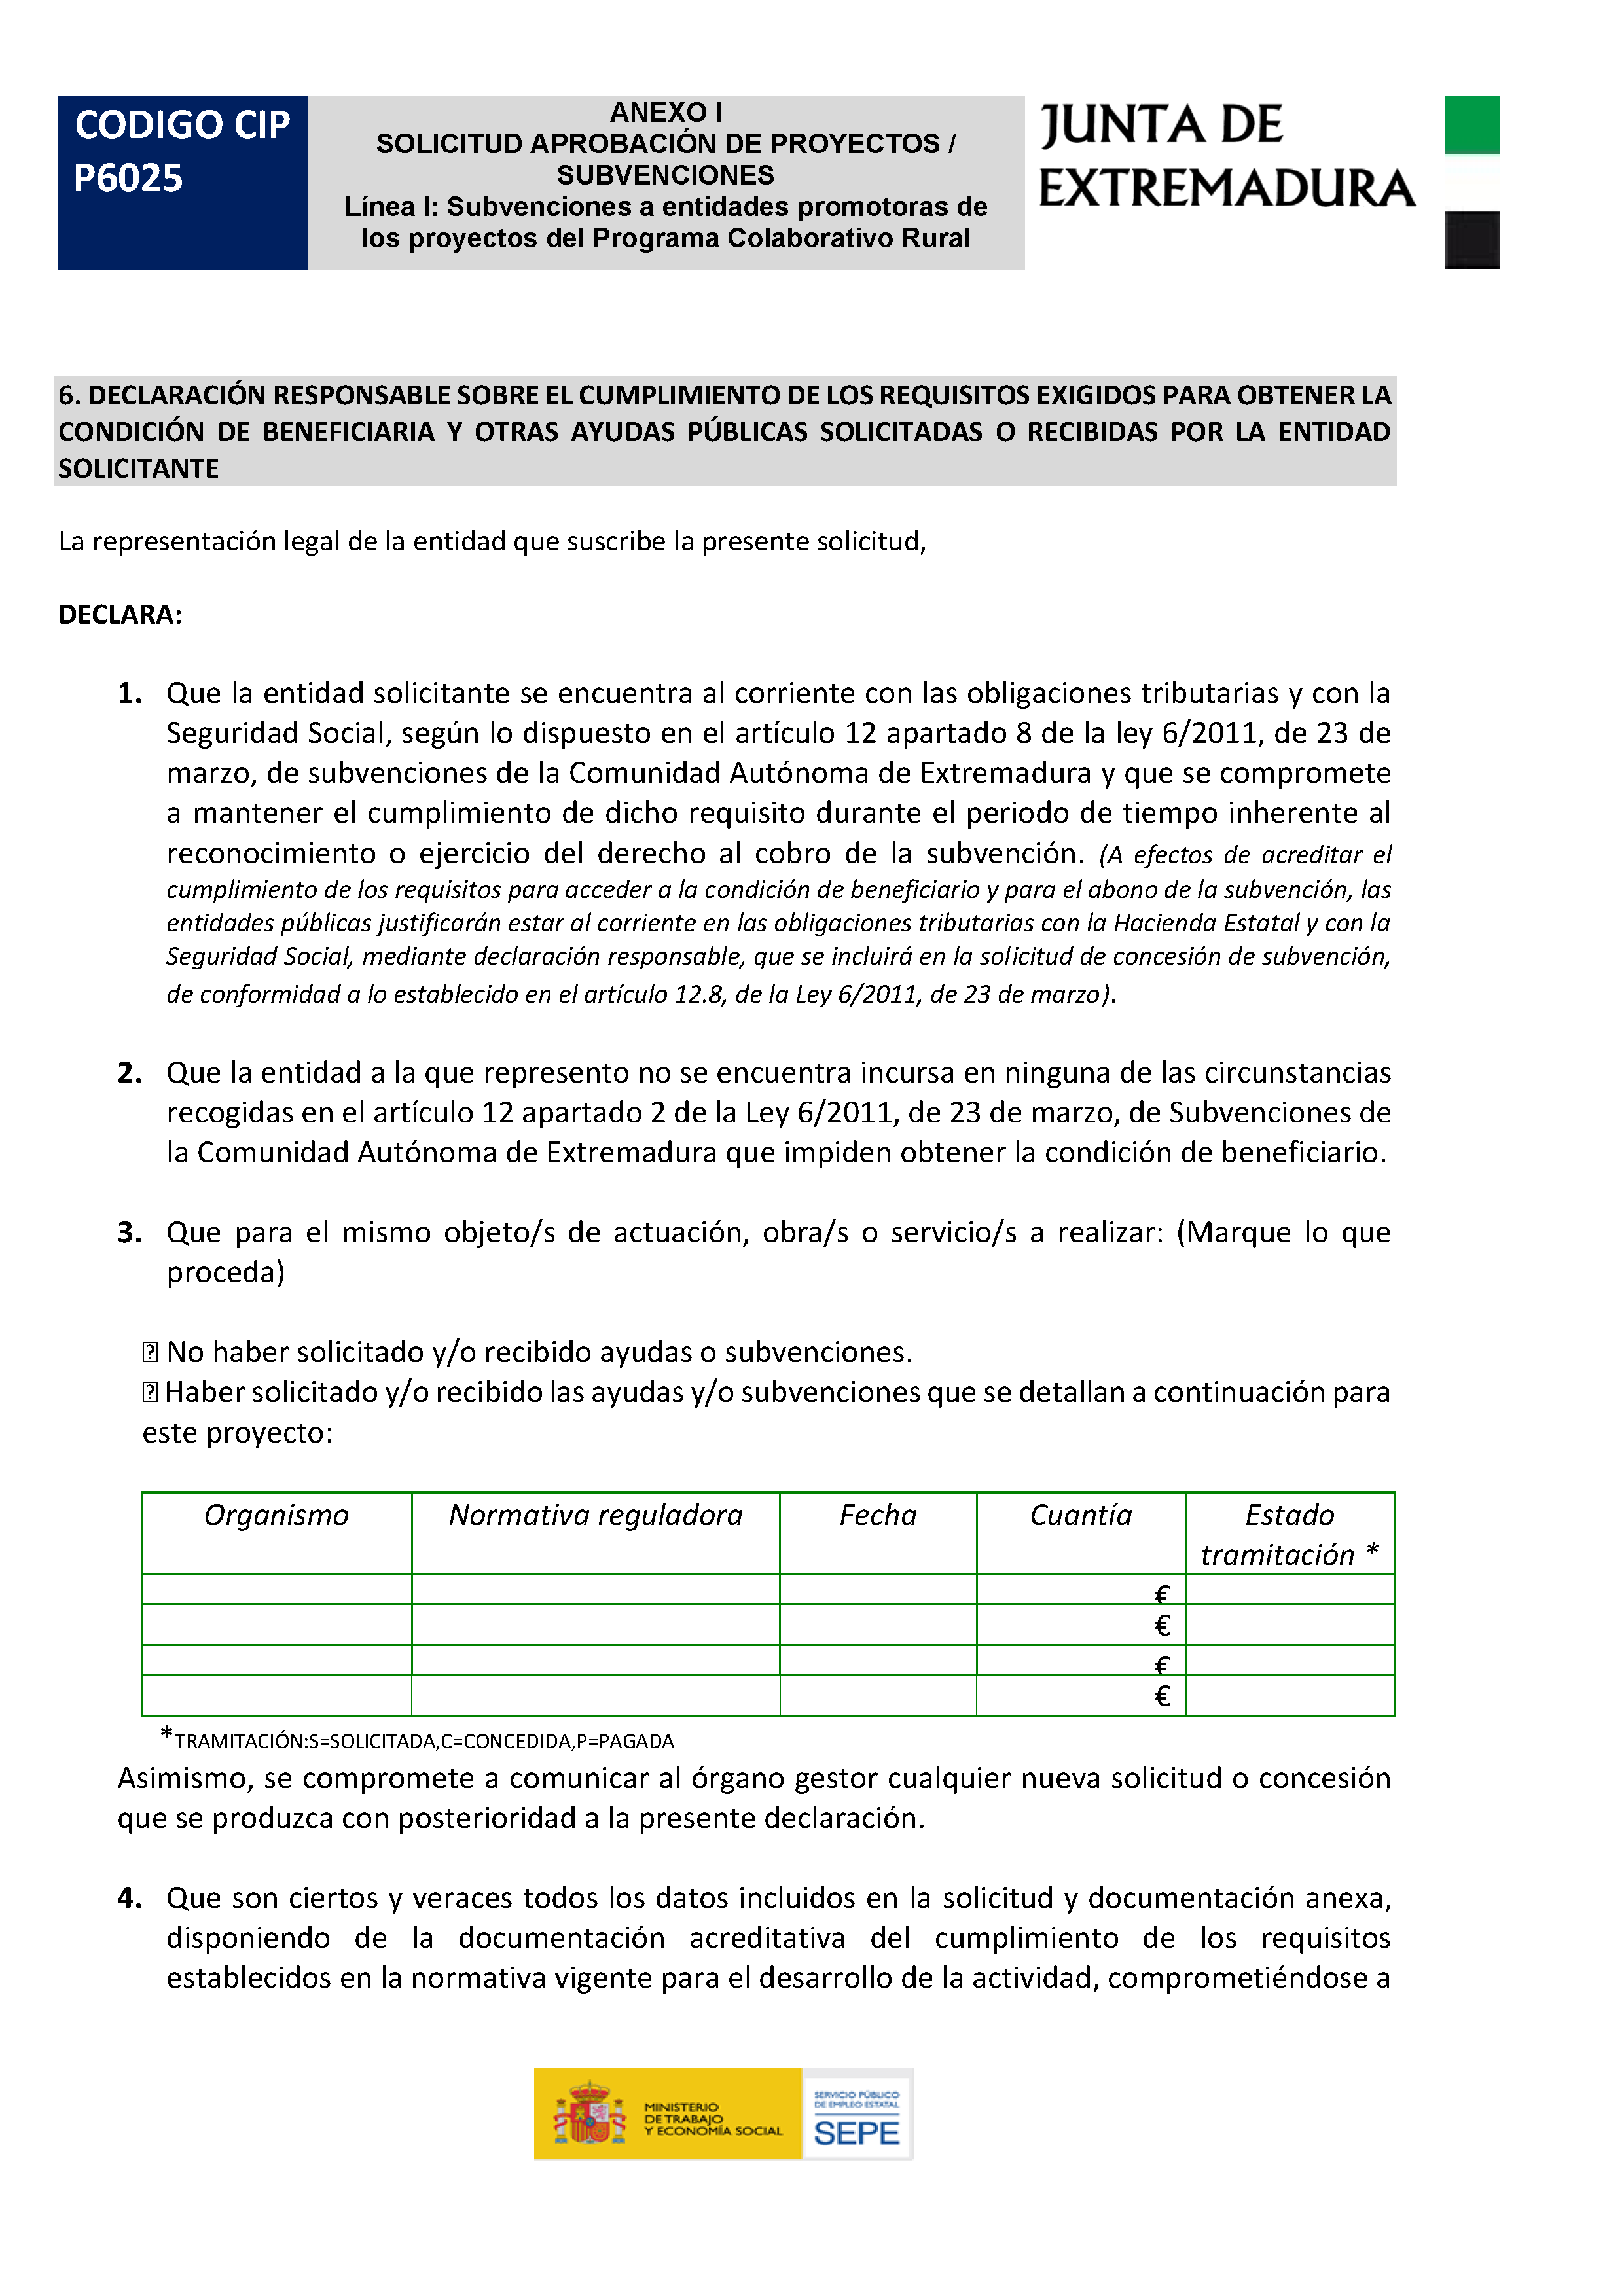 ANEXO I. SOLICITUD APROBACION DE PROYECTOS / SUBVENCIONES Pag 2